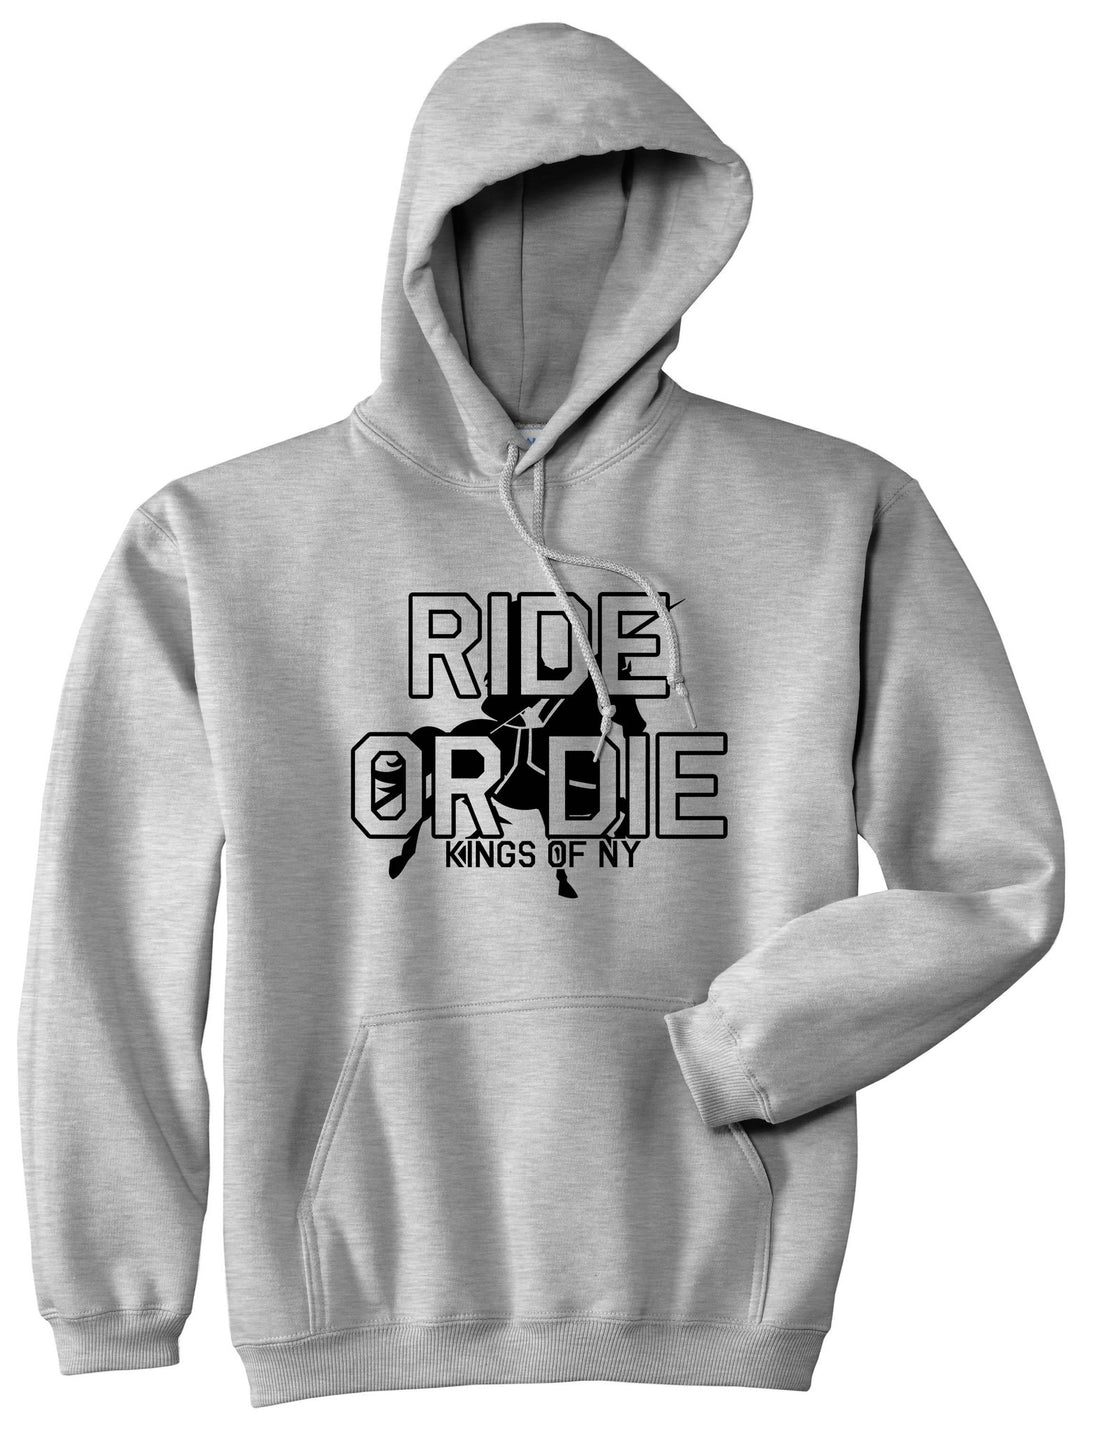 Ride Or Die Horse Rider Pullover Hoodie Hoody in Grey by Kings Of NY